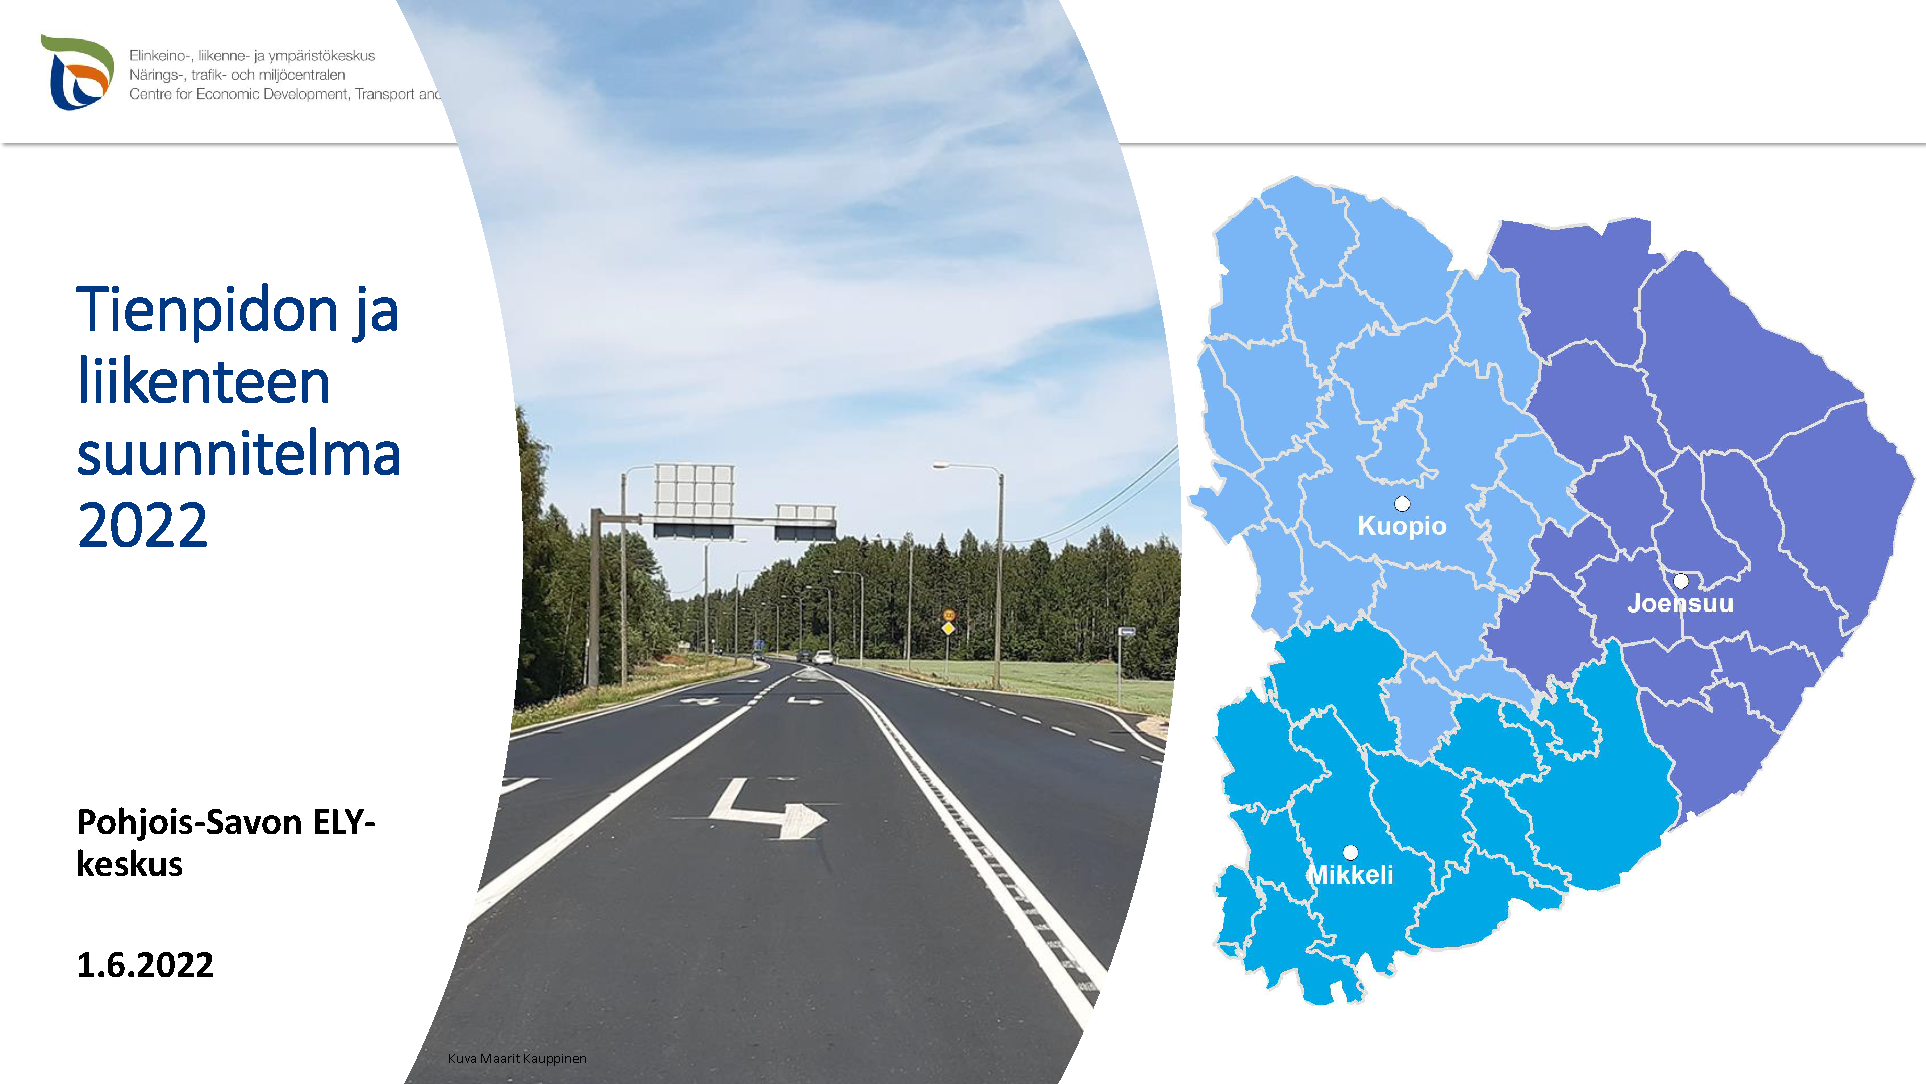 Itä-Suomen tienpidon ja liikenteen suunnitelma vuodelle 2022 on julkaistu |  ELY-keskukset